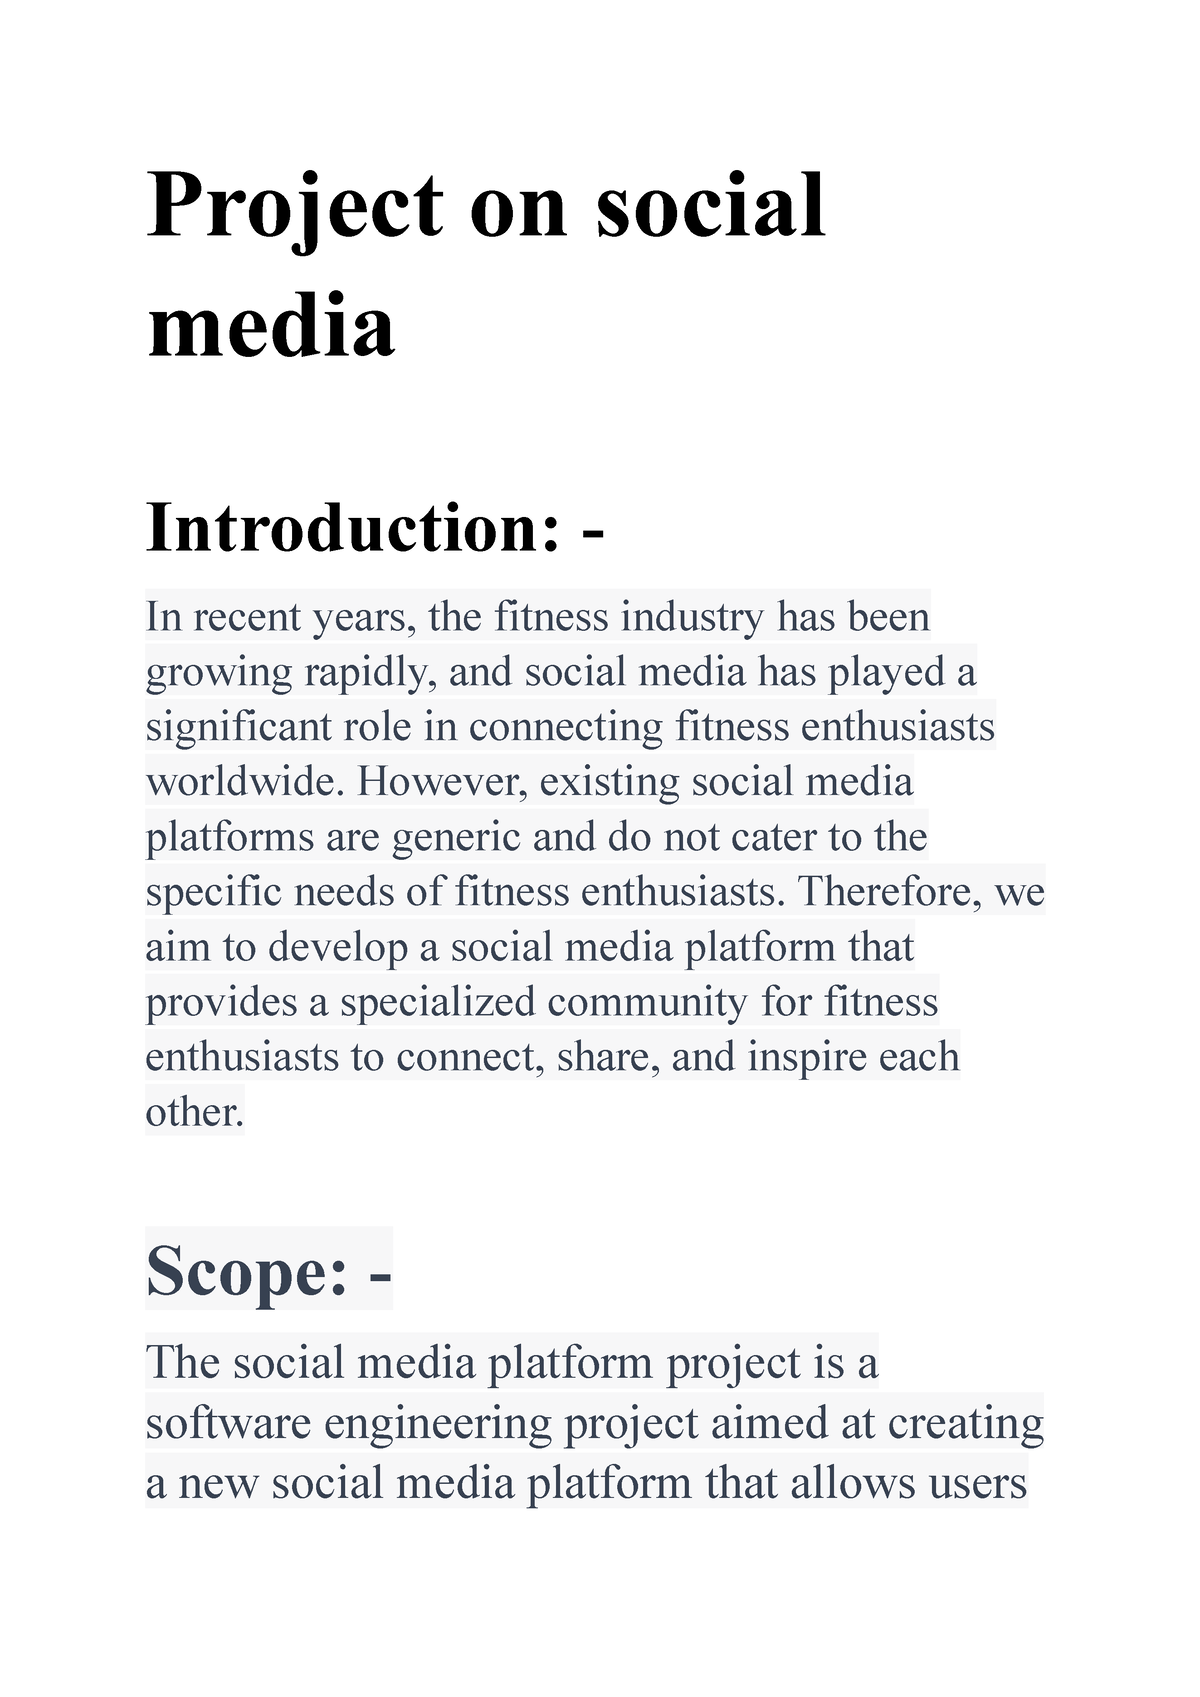 essay social media introduction